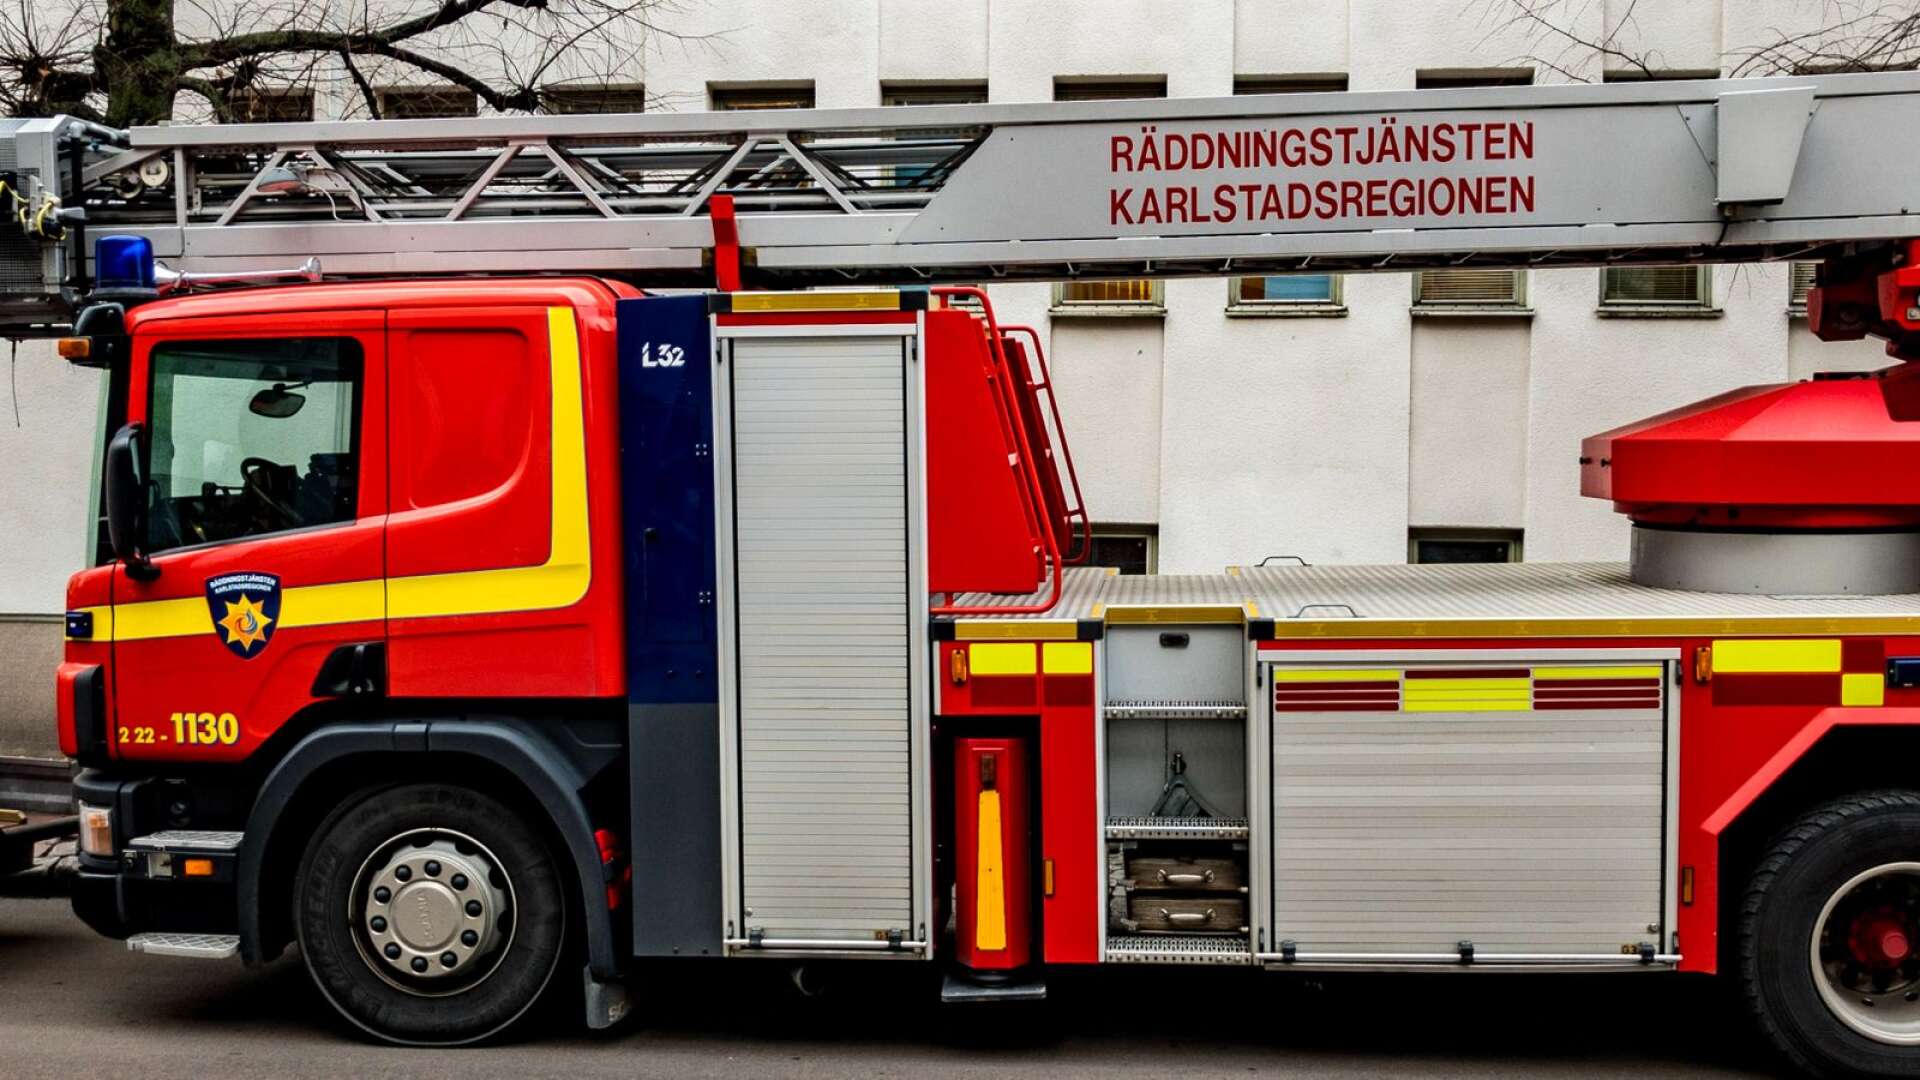 Räddningstjänsten i Karlstadsregionen klarar sin beredskap även om många blir sjuka i covid-19 samtidigt.